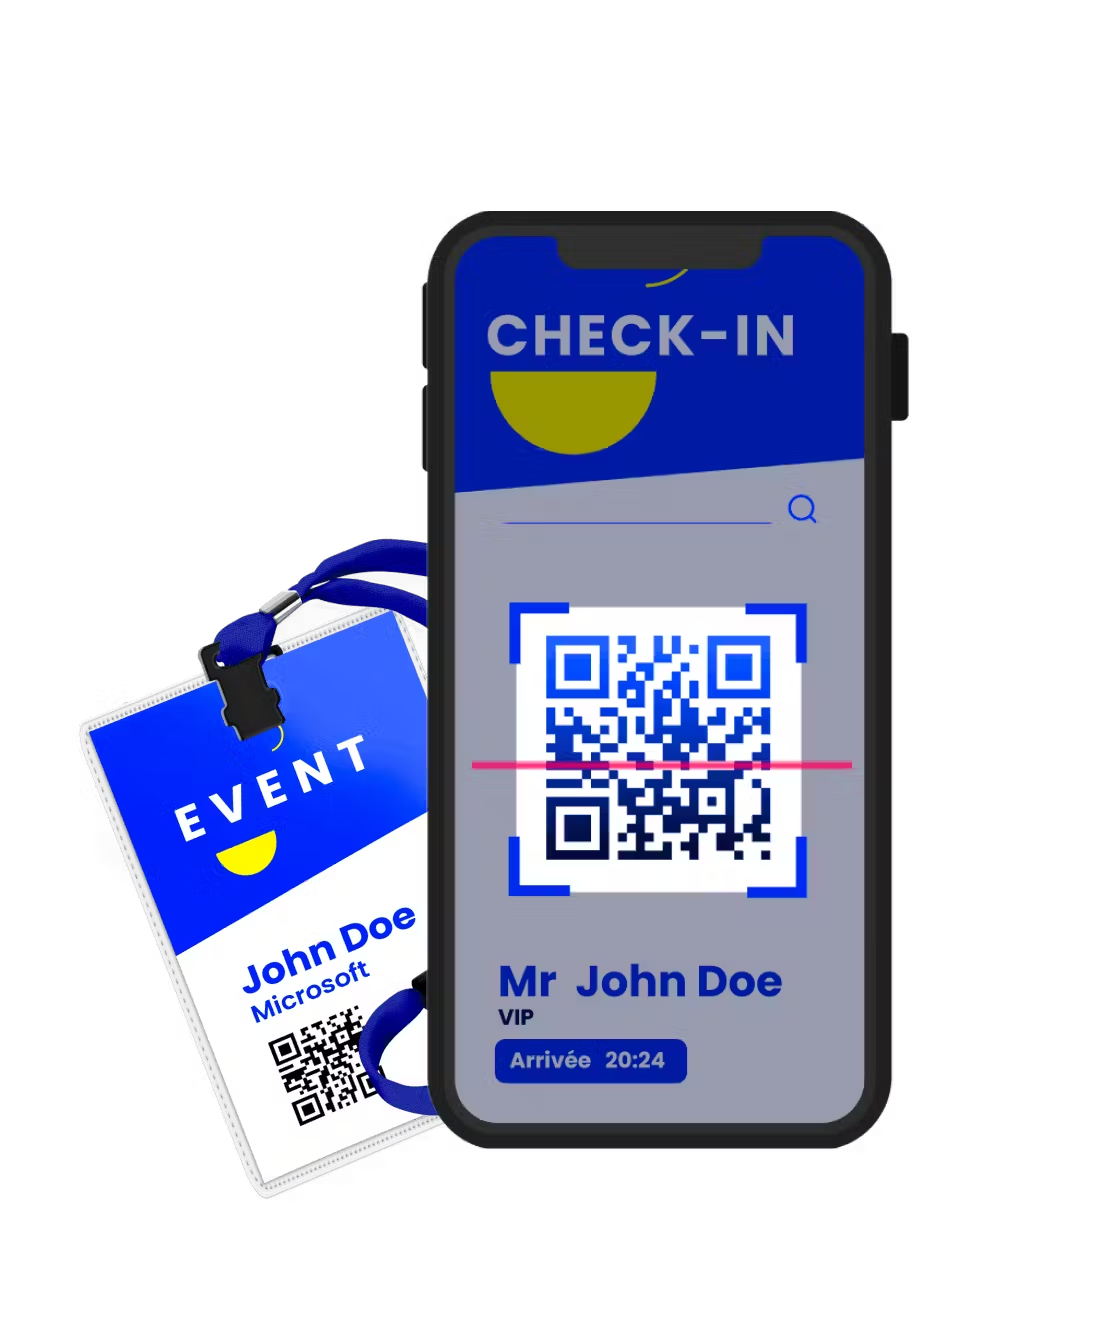 Digitevent - Application de check-in et d'impression de badges